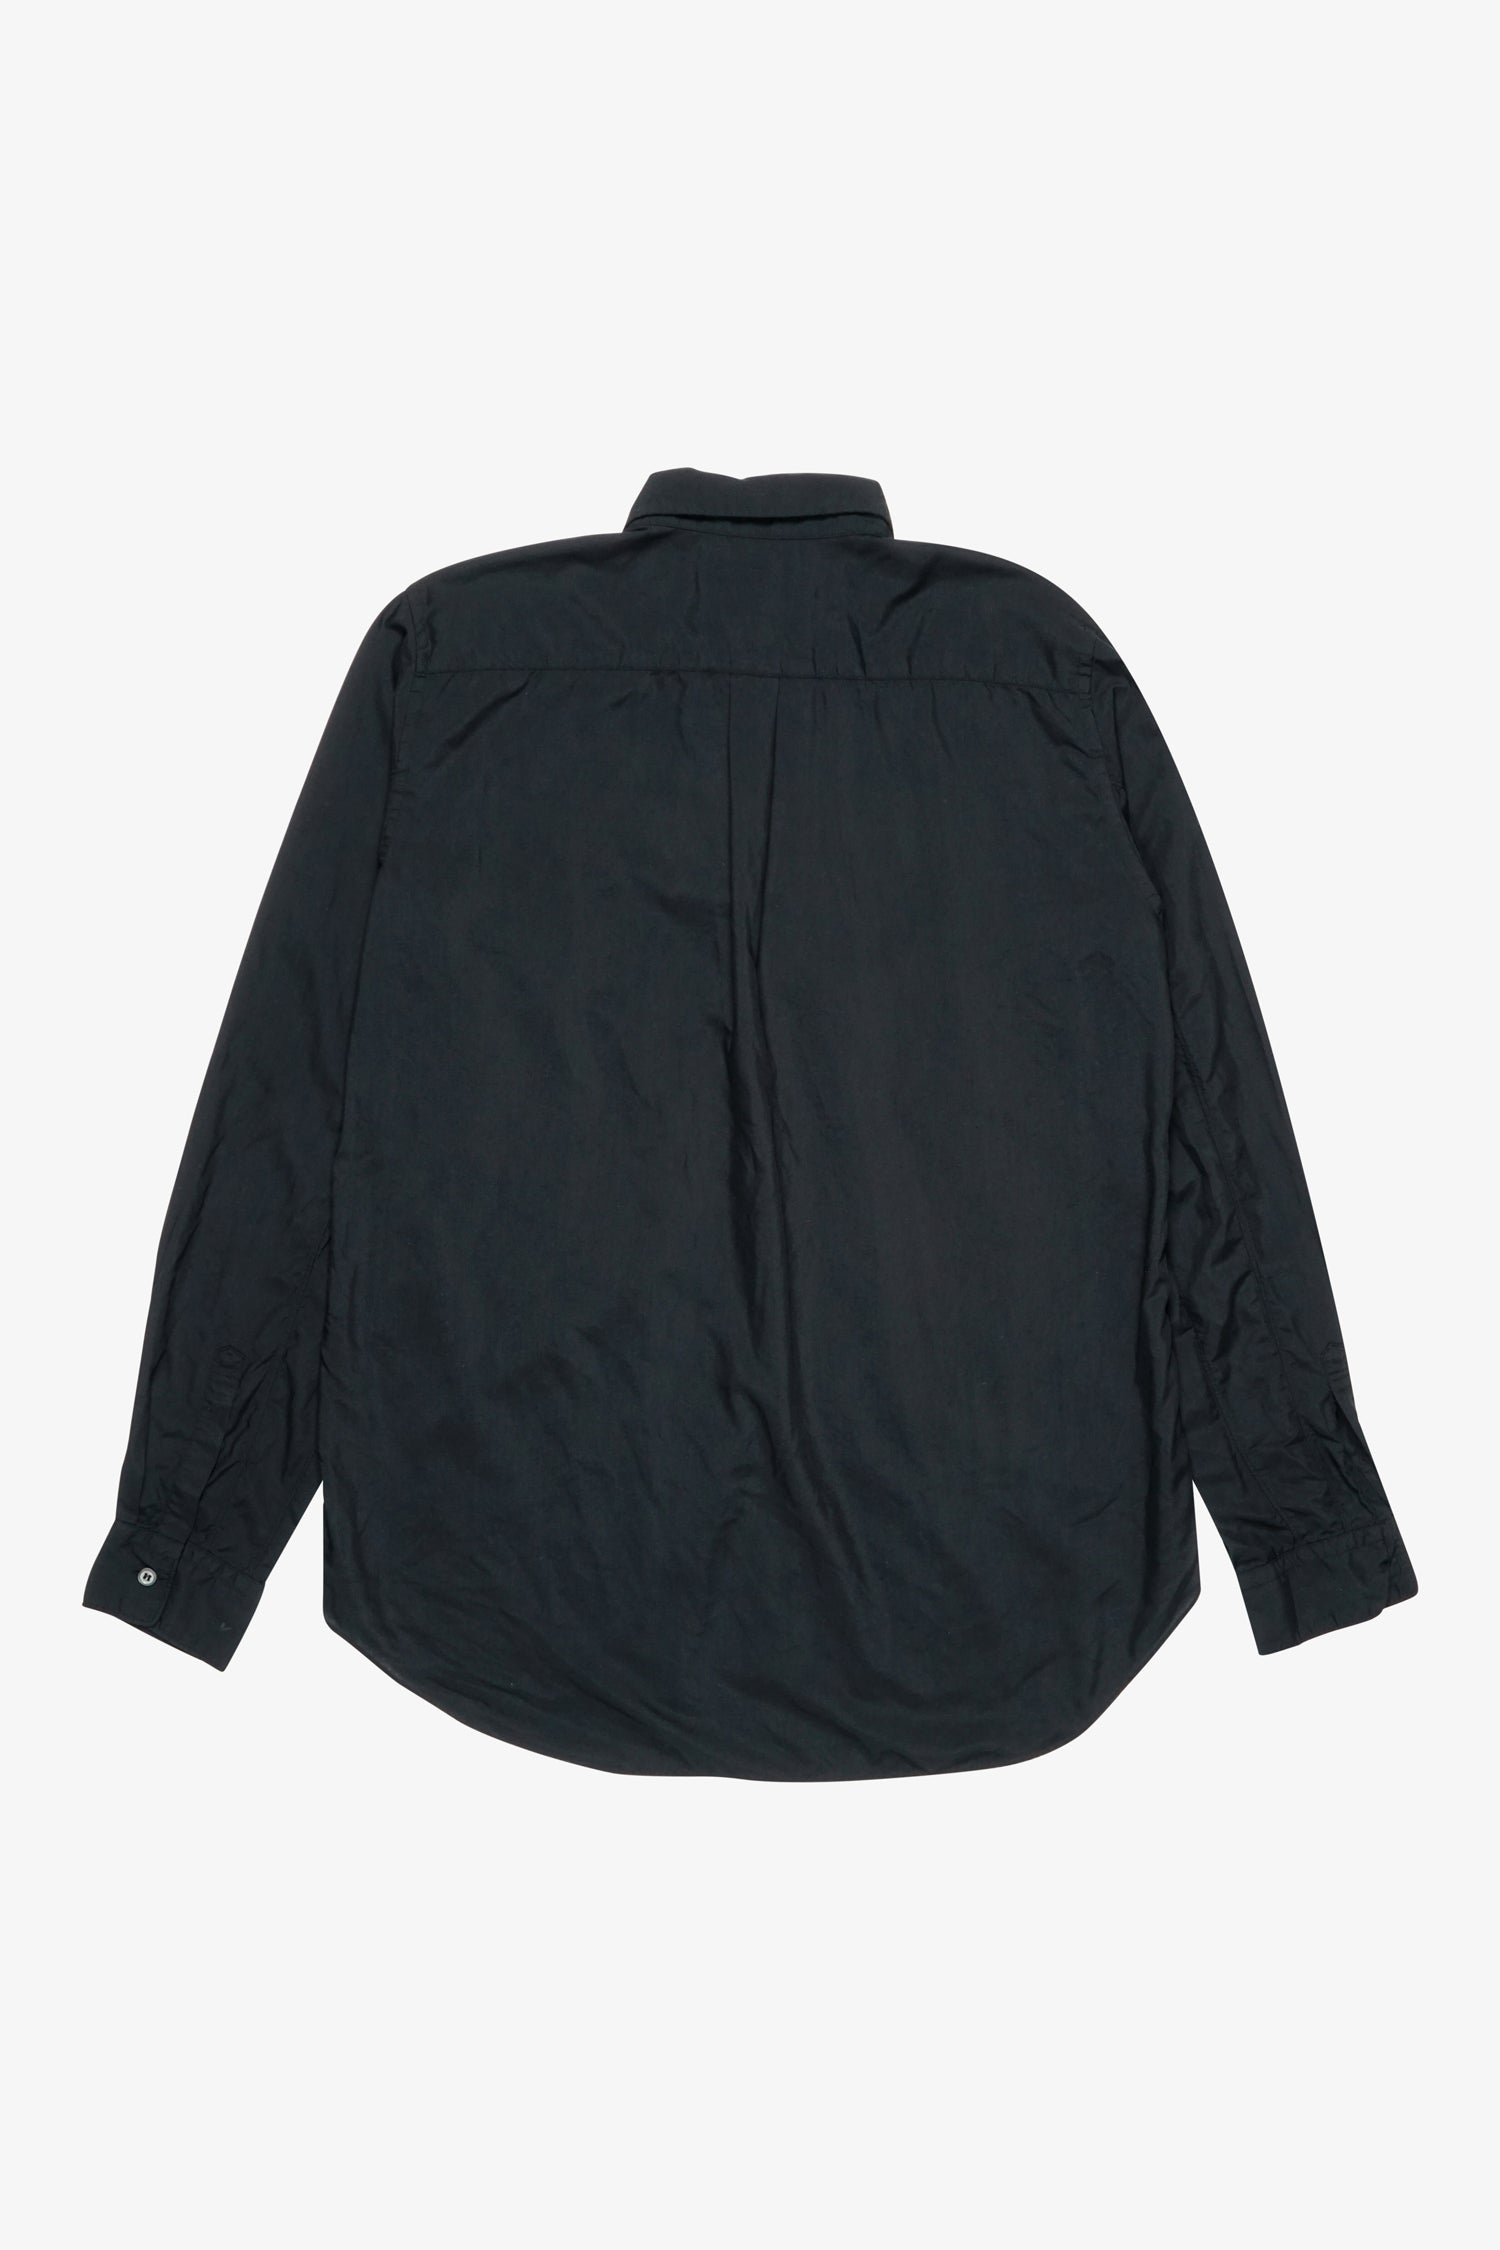 Selectshop FRAME - COMME DES GARCONS BLACK Patch Pocket Shirt Shirts Dubai